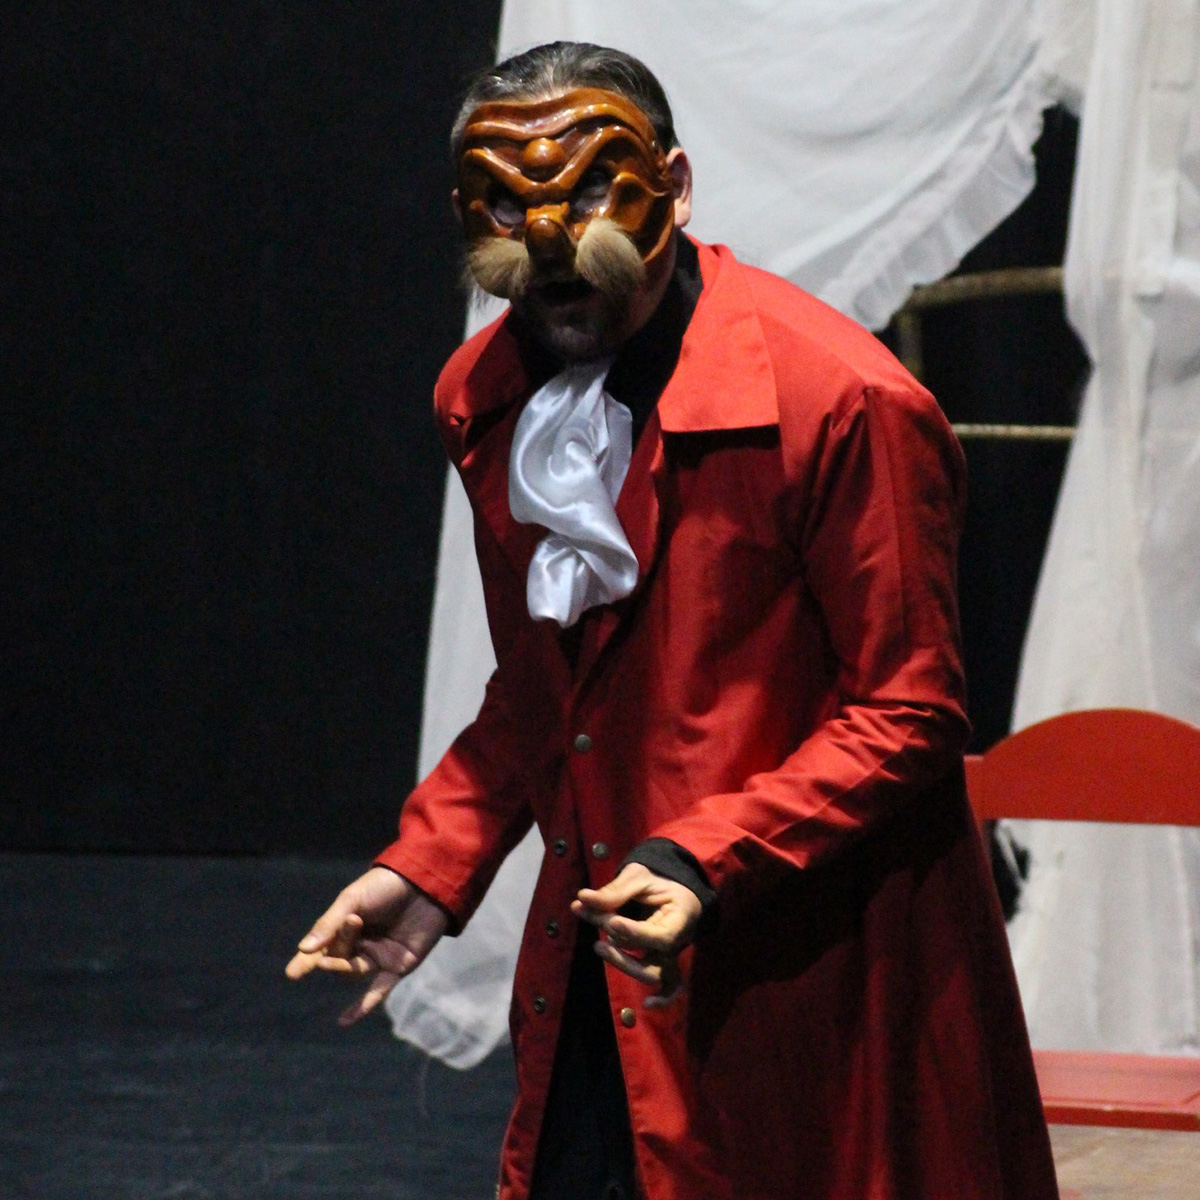 Teatromuseo estrena espectáculo de máscaras